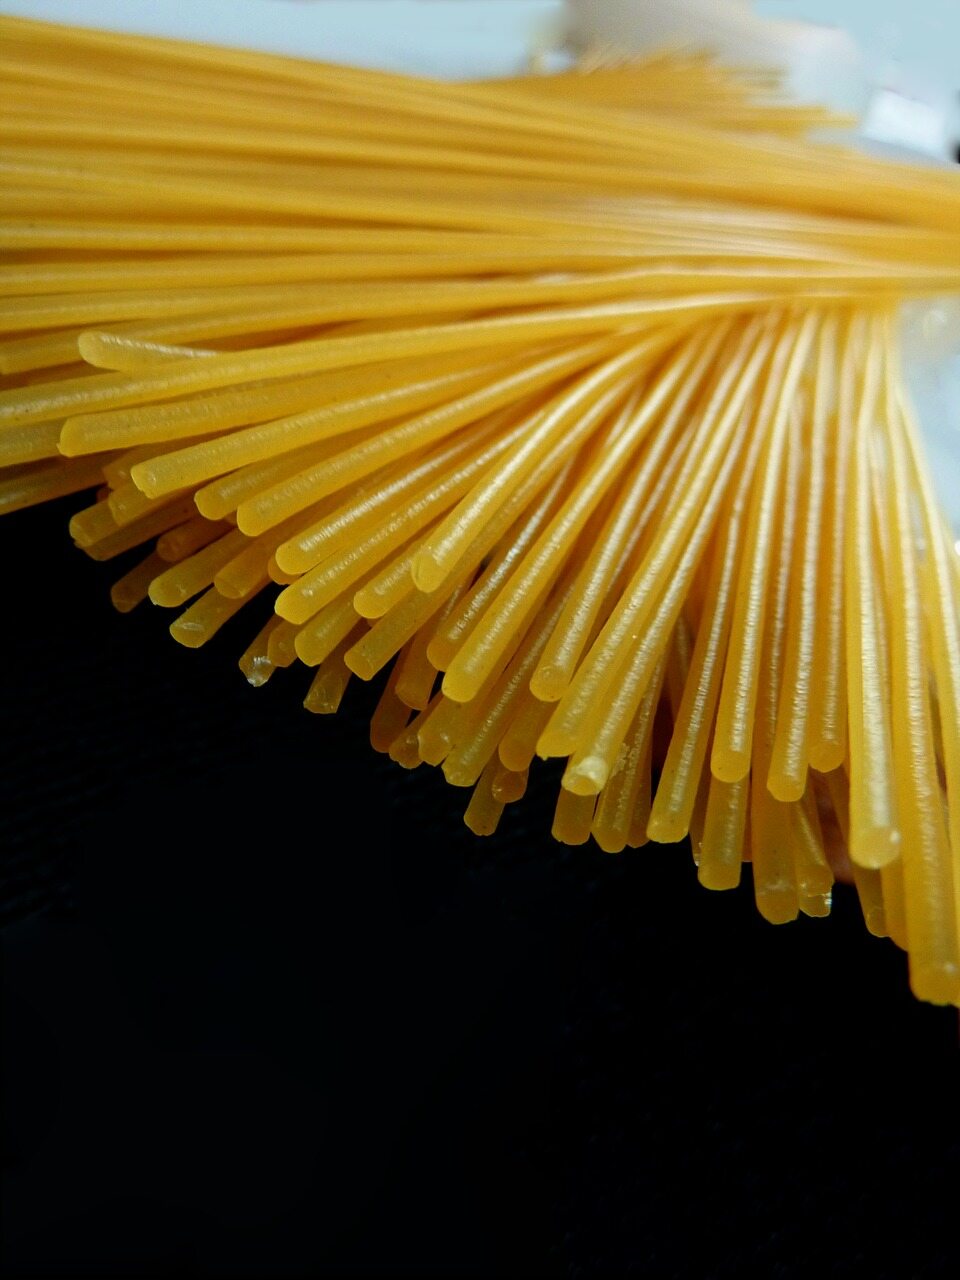 Wymień składniki spaghetti bolognese.